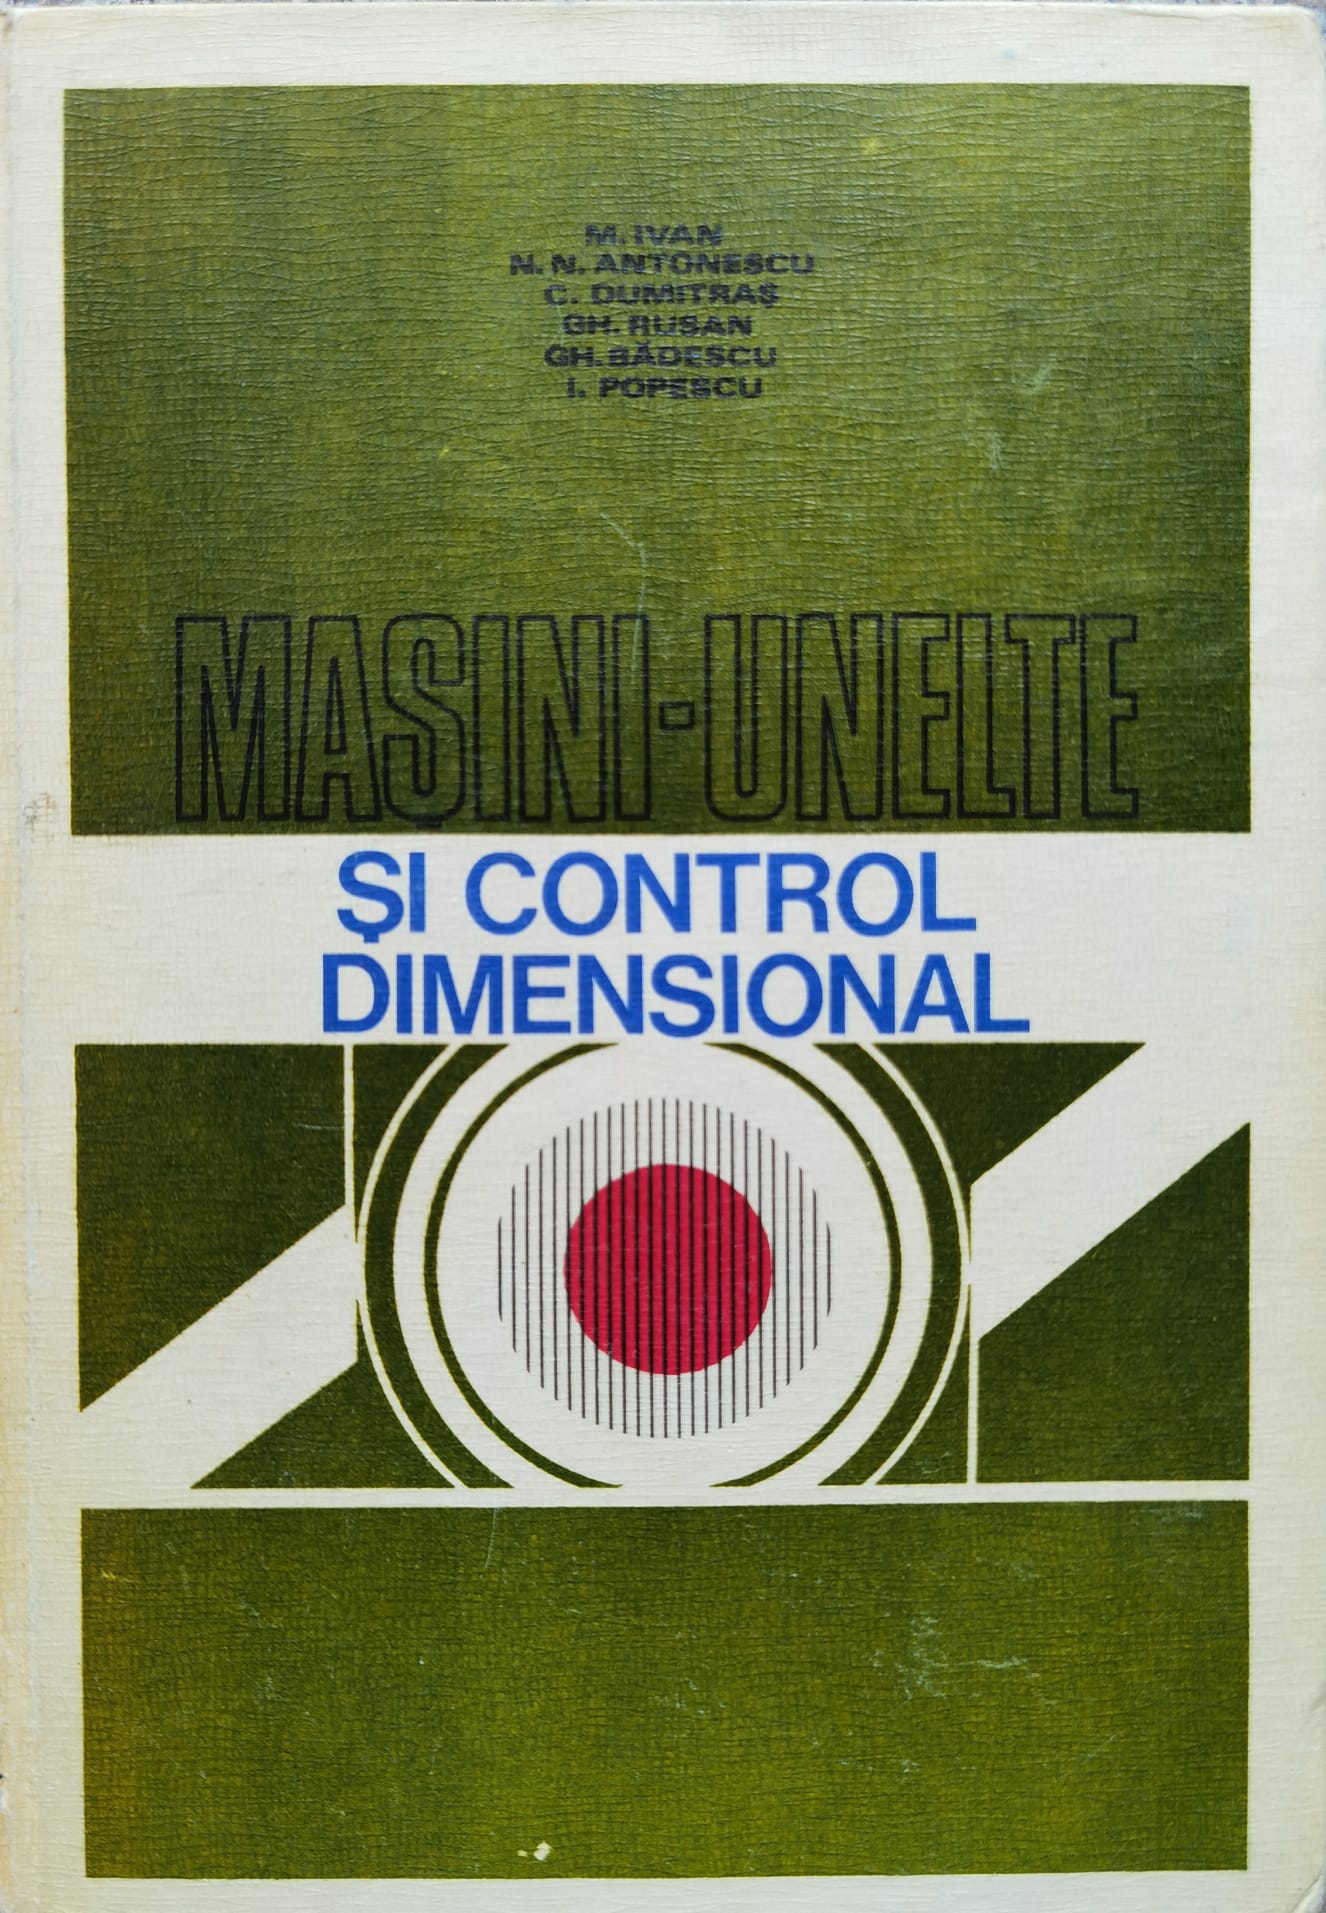 masini-unelte si control dimensional                                                                 m. ivan n.n. antonescu c. dumitras gh. rusan gh. badescu i. popescu                                 